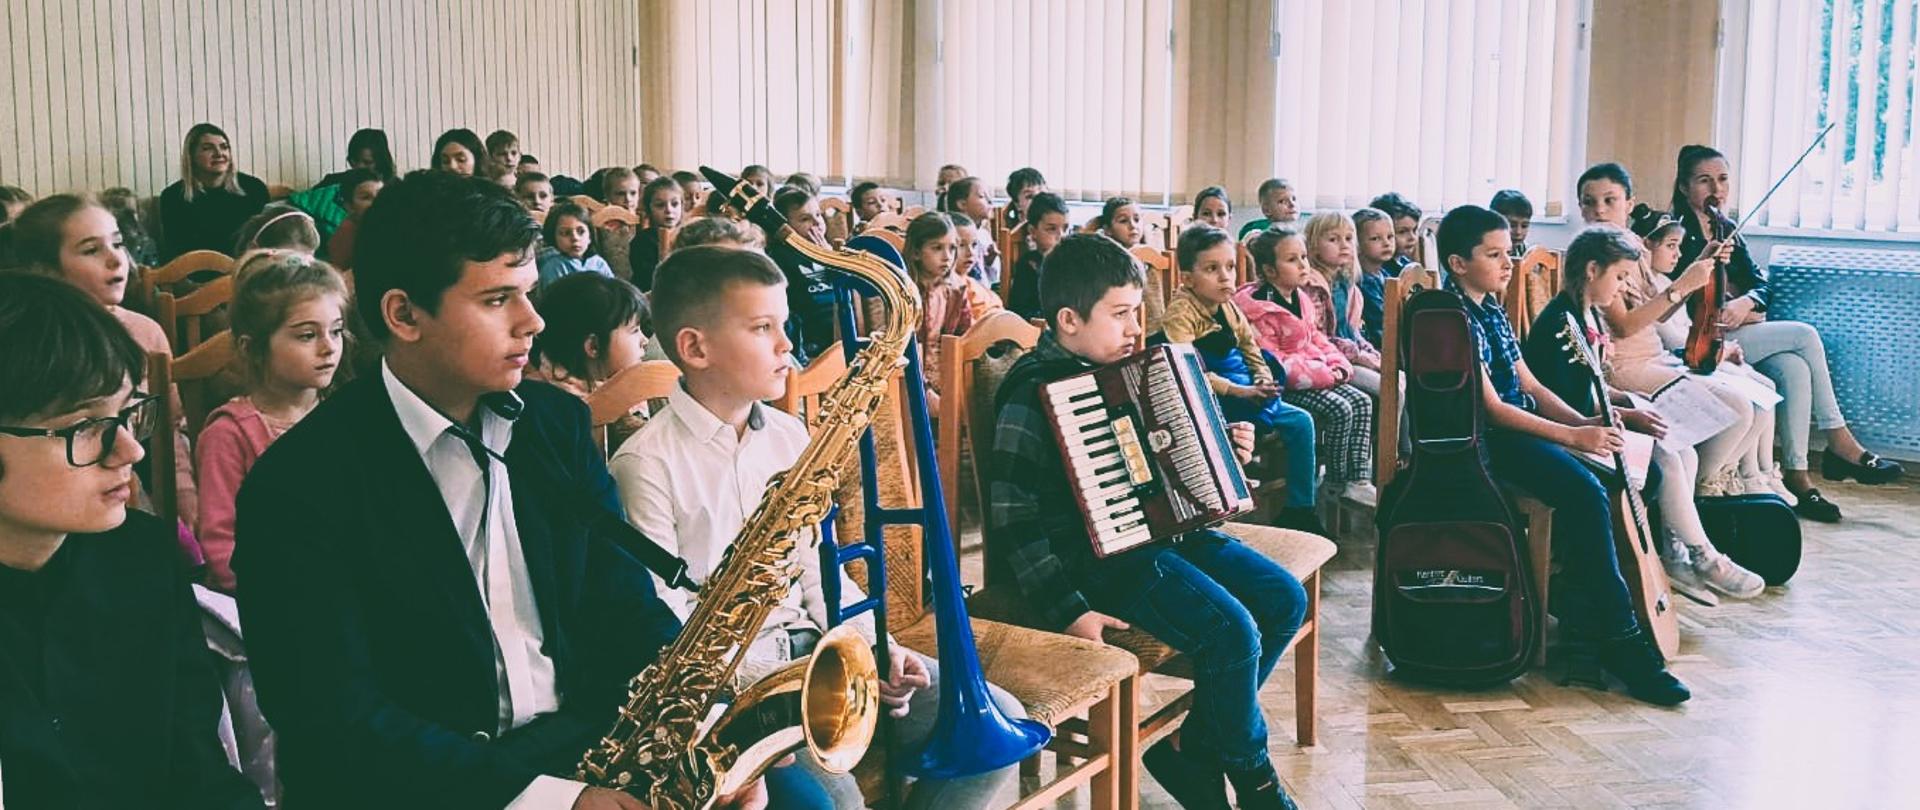 Zdjęcie przedstawia grupę dzieci siedzących w szkolnej auli z instrumentami muzycznymi. Aula ma duże okno z zasłonami i rośliną w rogu. Dzieci na drewnianych krzesłach trzymając instrumenty saksofon akordeon i skrzypce.